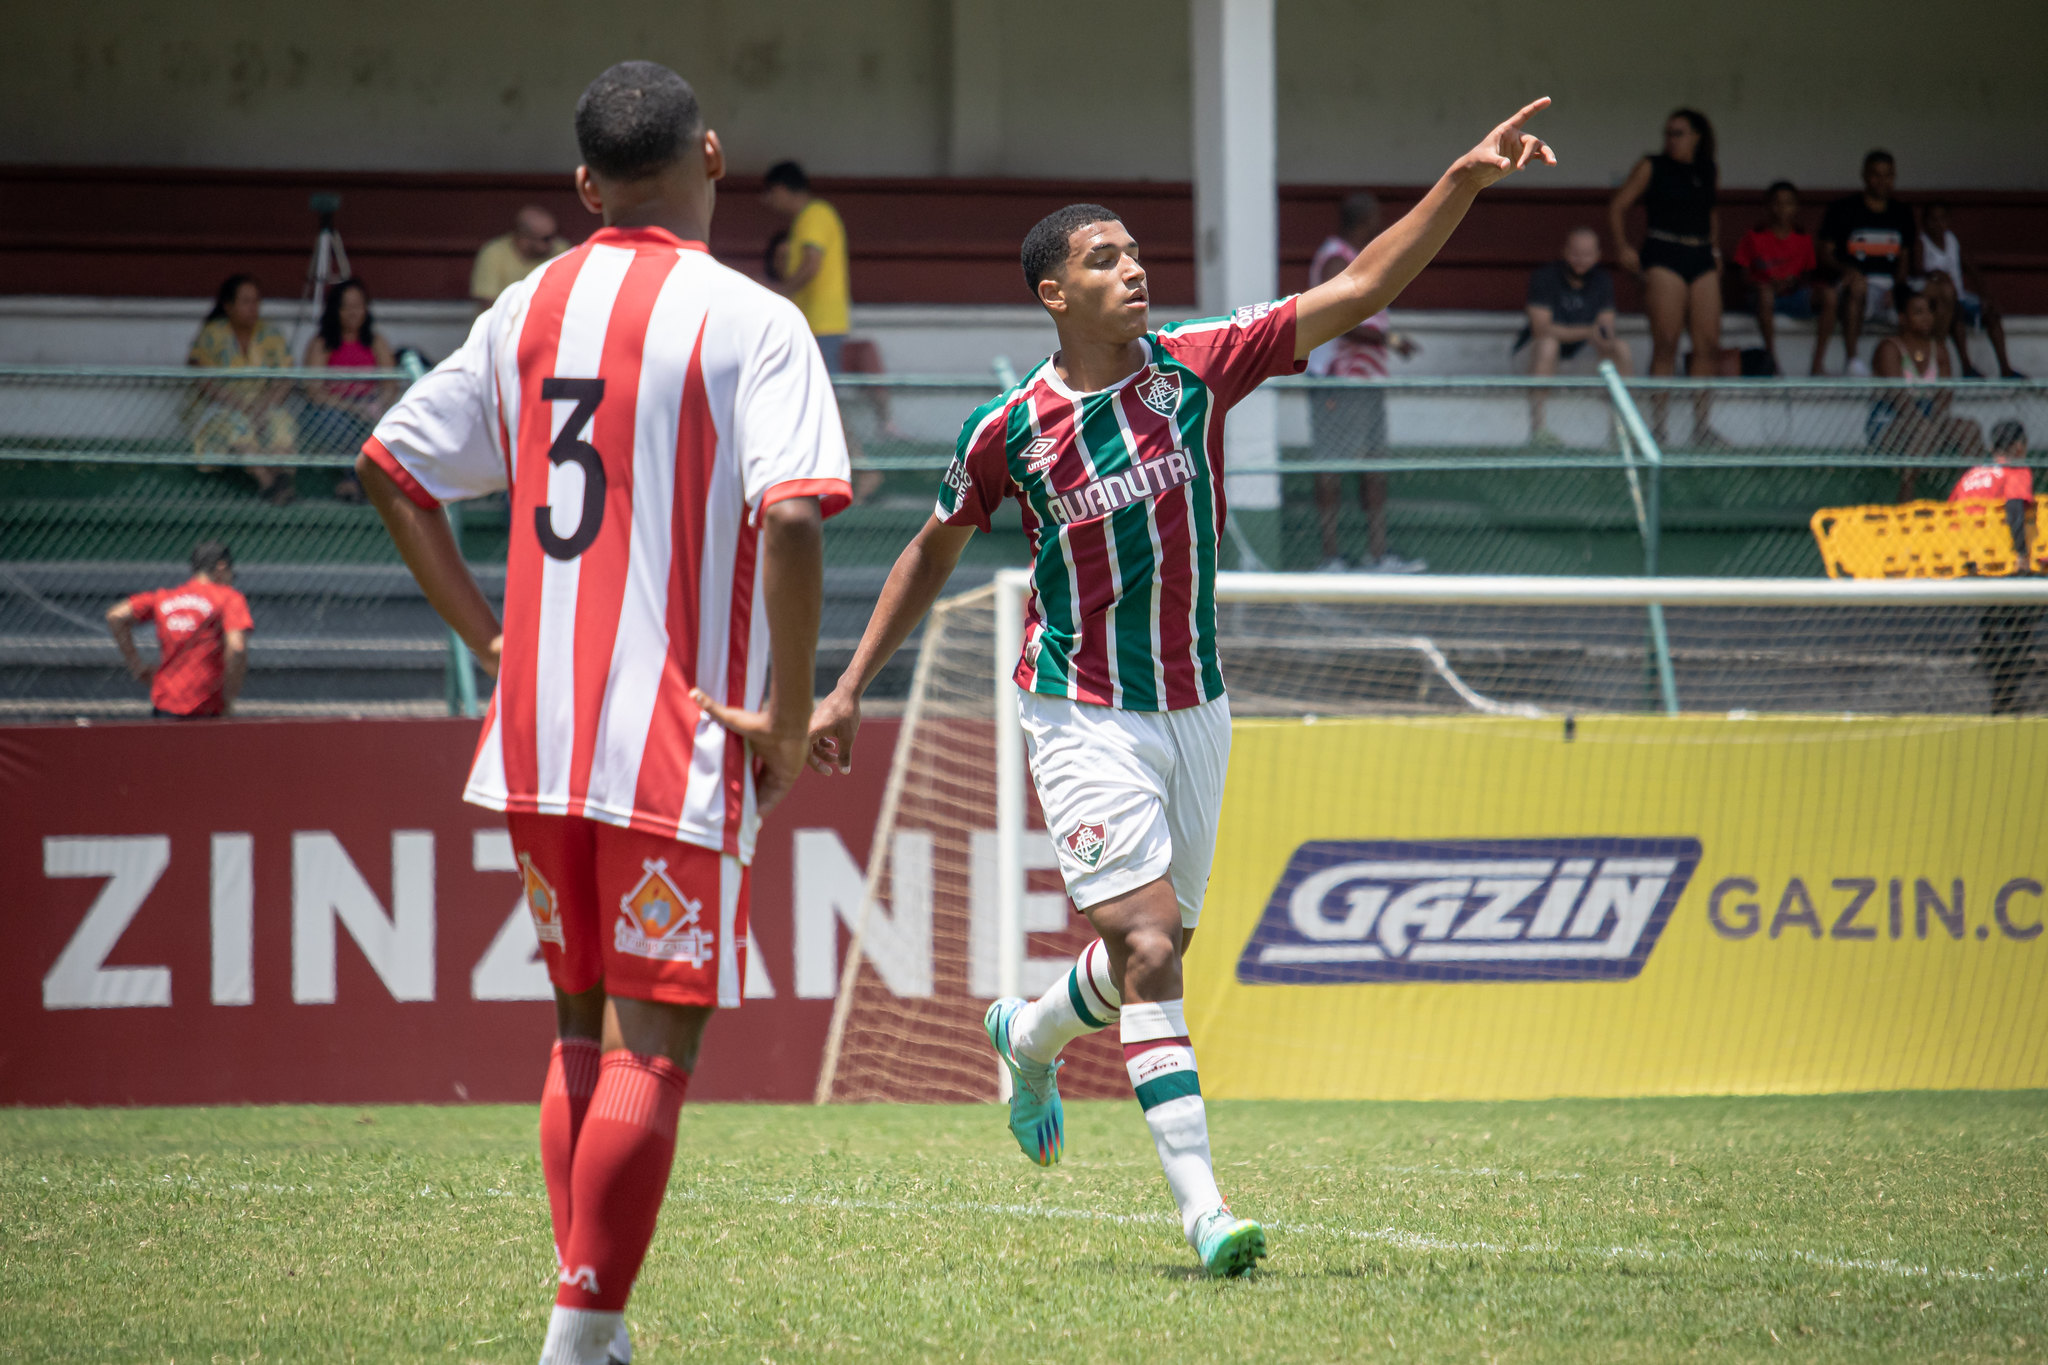 Kauã Elias defende o Sub-17 do Flu contra o Palmeiras pelo Brasileirão: ' Jogo que se decide no detalhe' — Fluminense Football Club